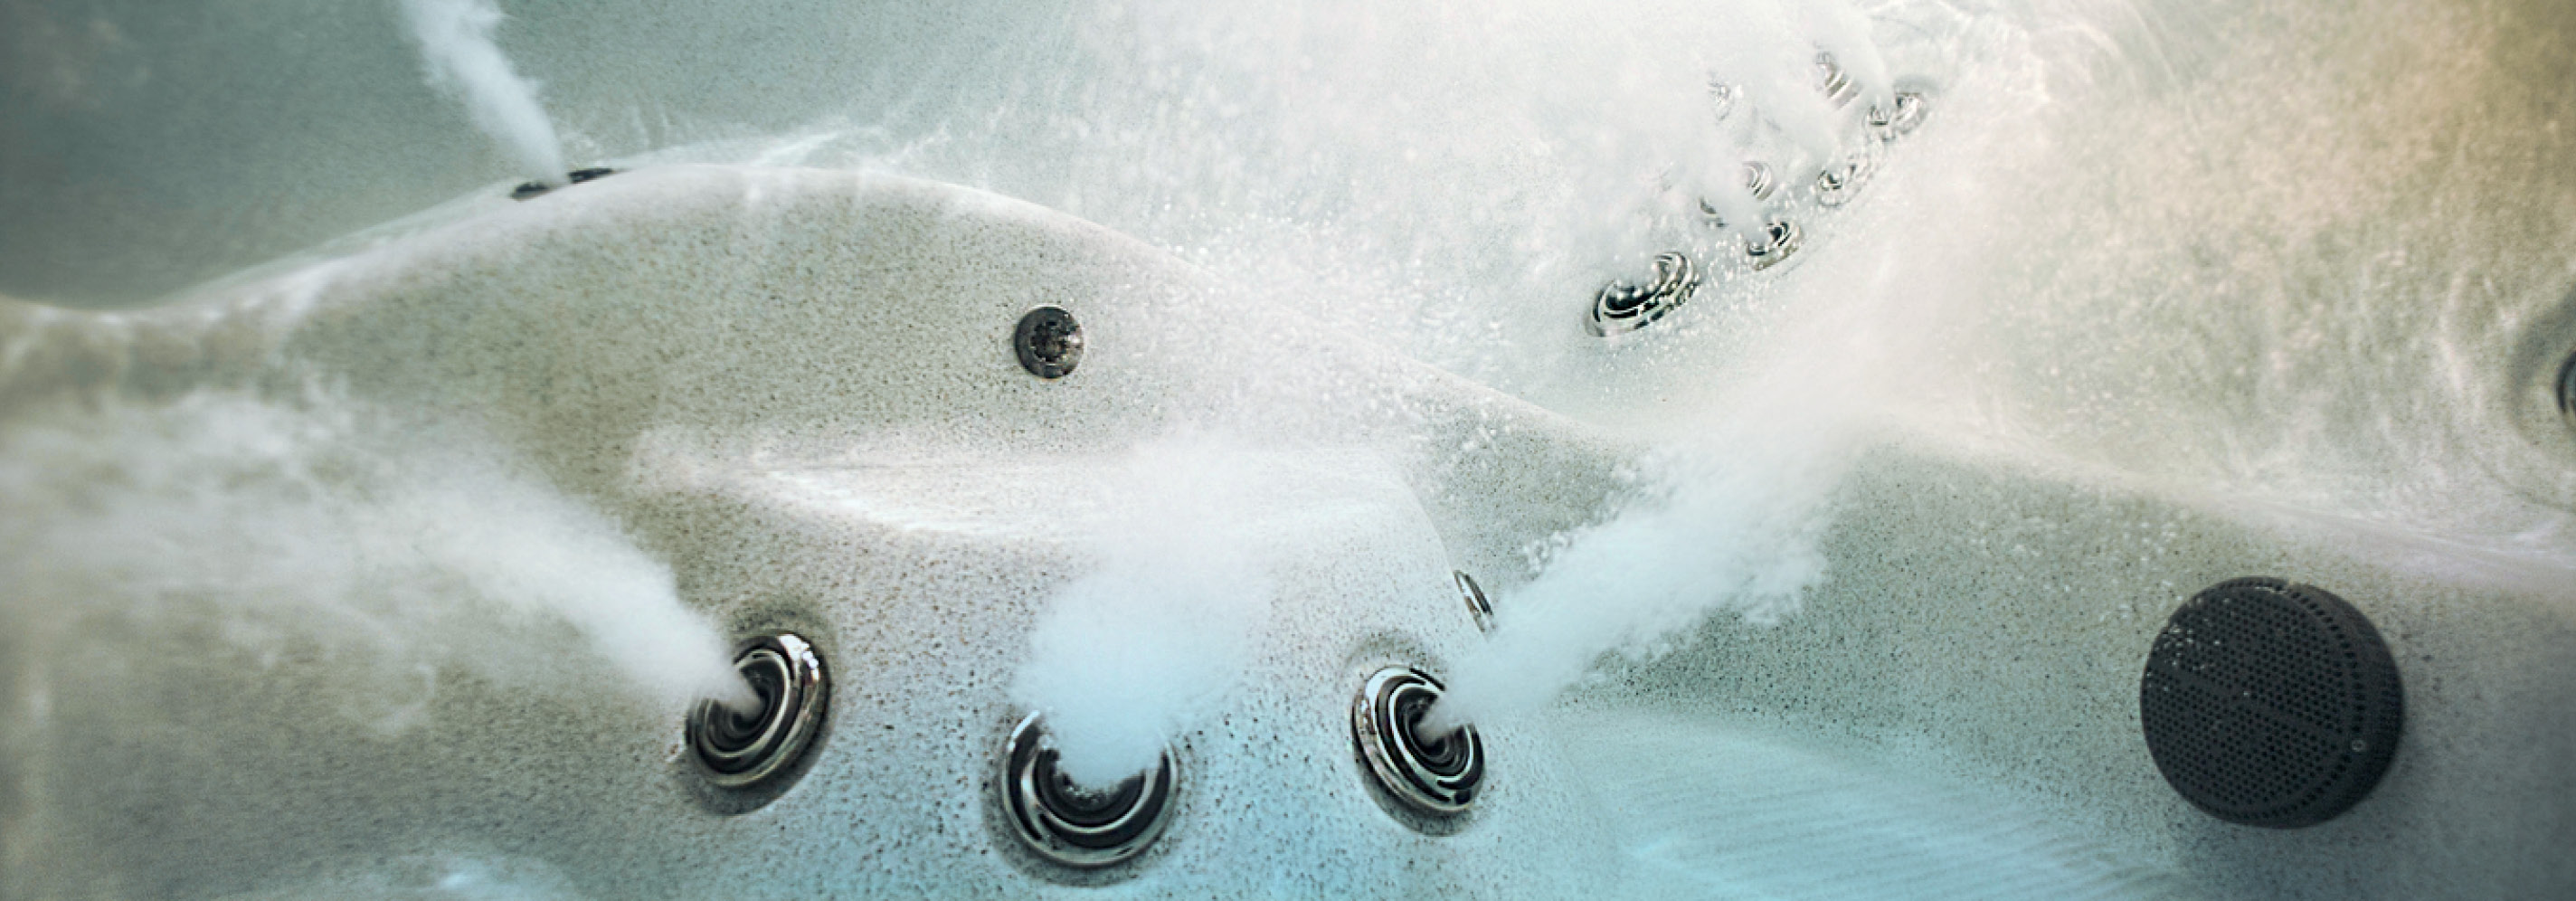 Onderwaterbeeld van de jets in een bubbelbad